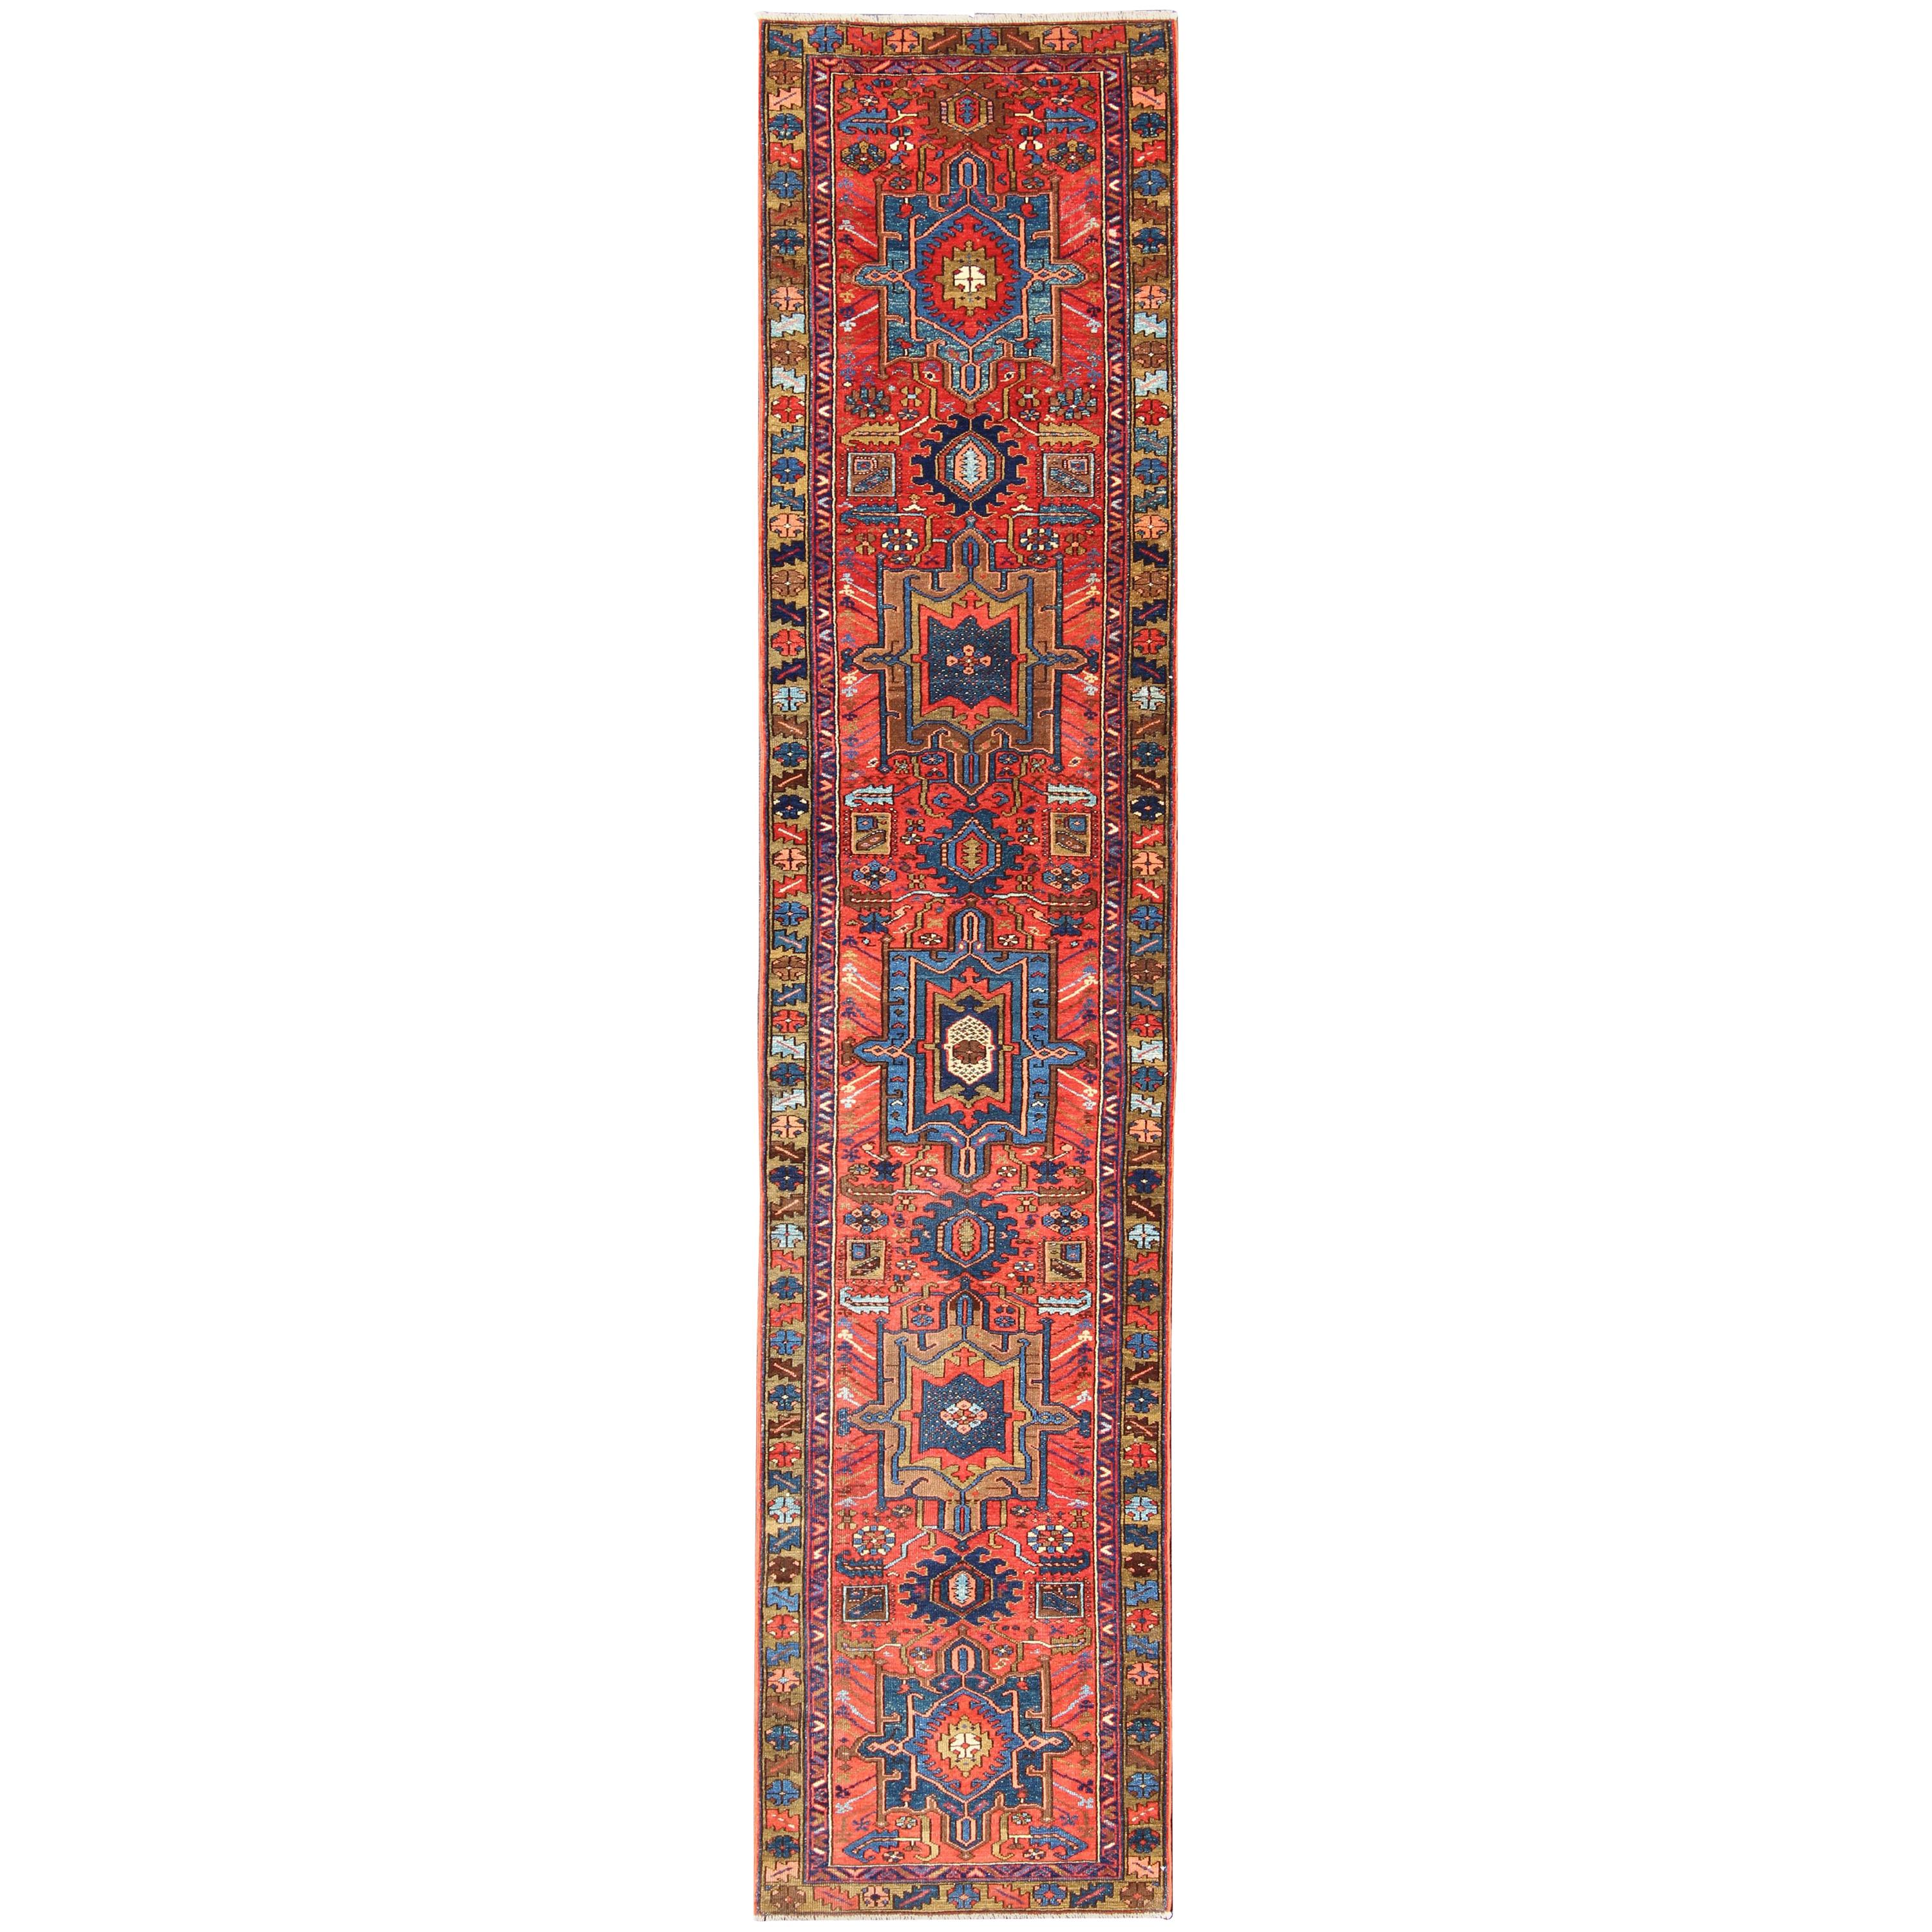 Tapis de couloir persan ancien Karadjeh avec médaillons géométriques superposés rouge-orange